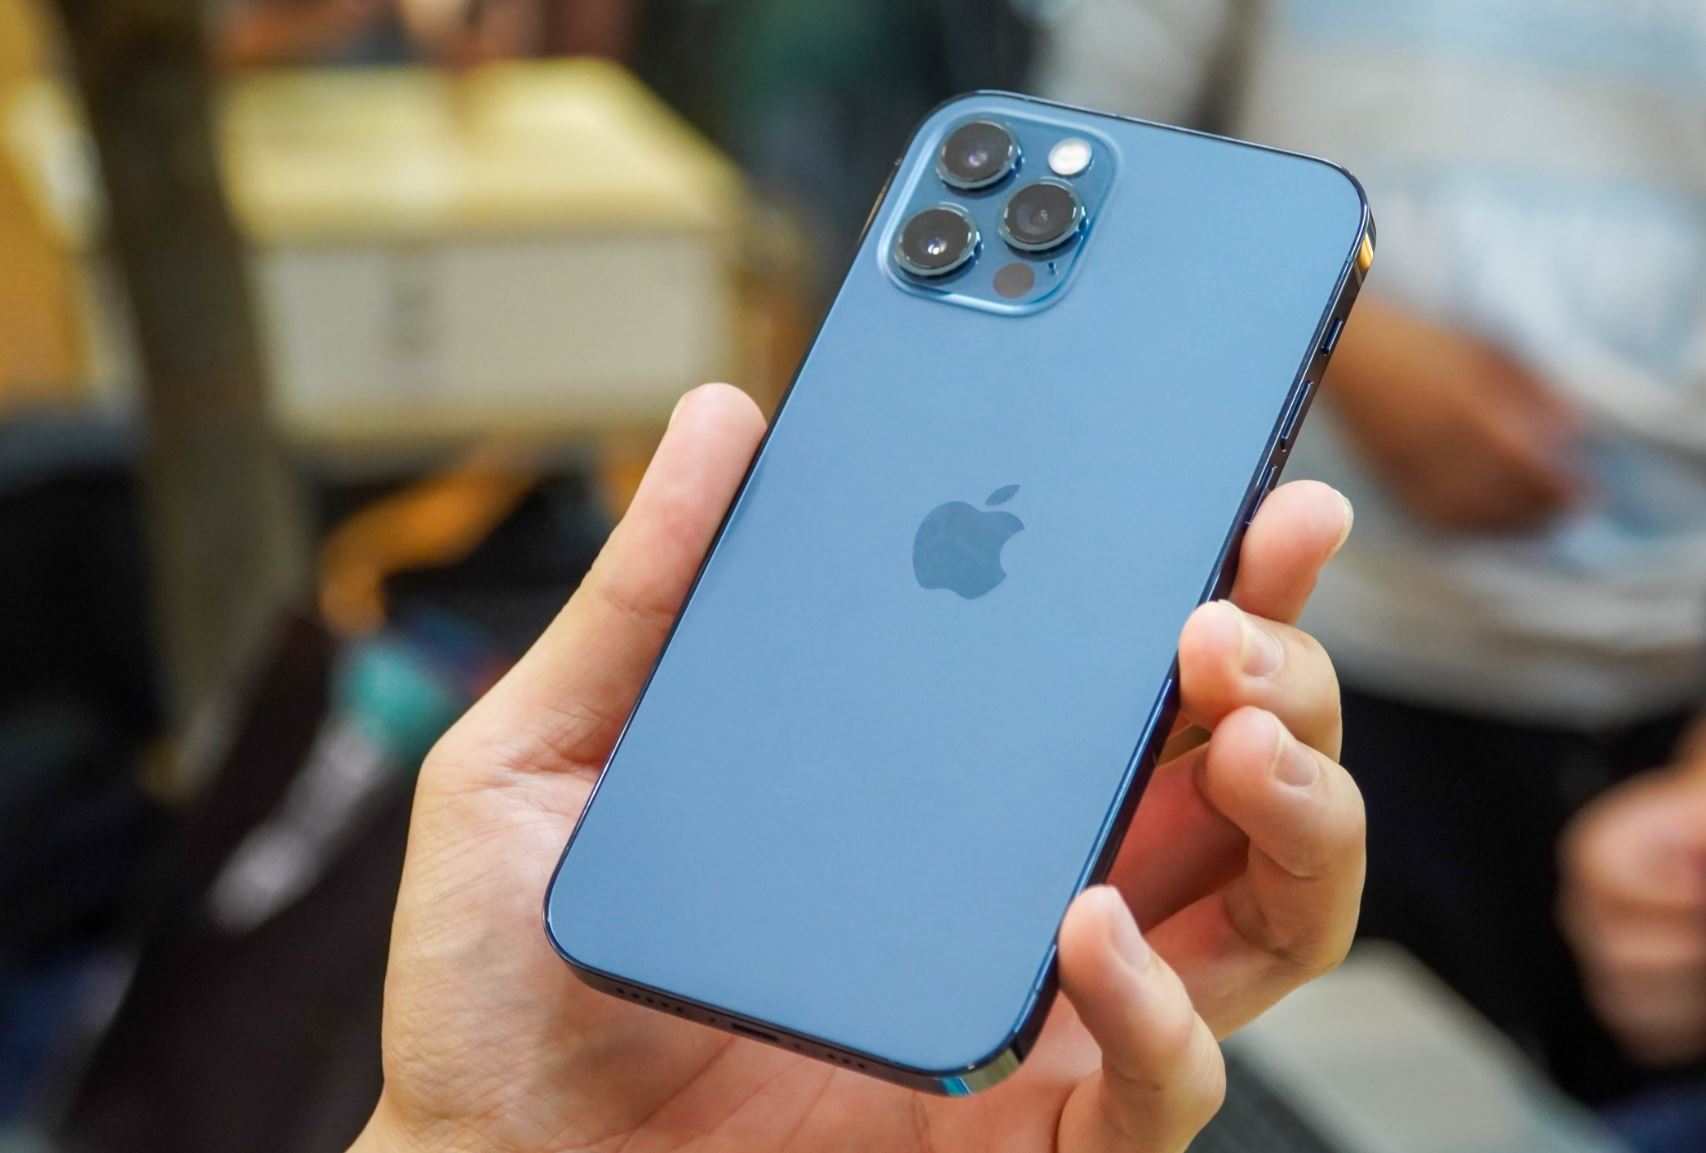 Apple thay đổi chính sách bảo hành tại Việt Nam, iPhone không dễ được “1 đổi 1”